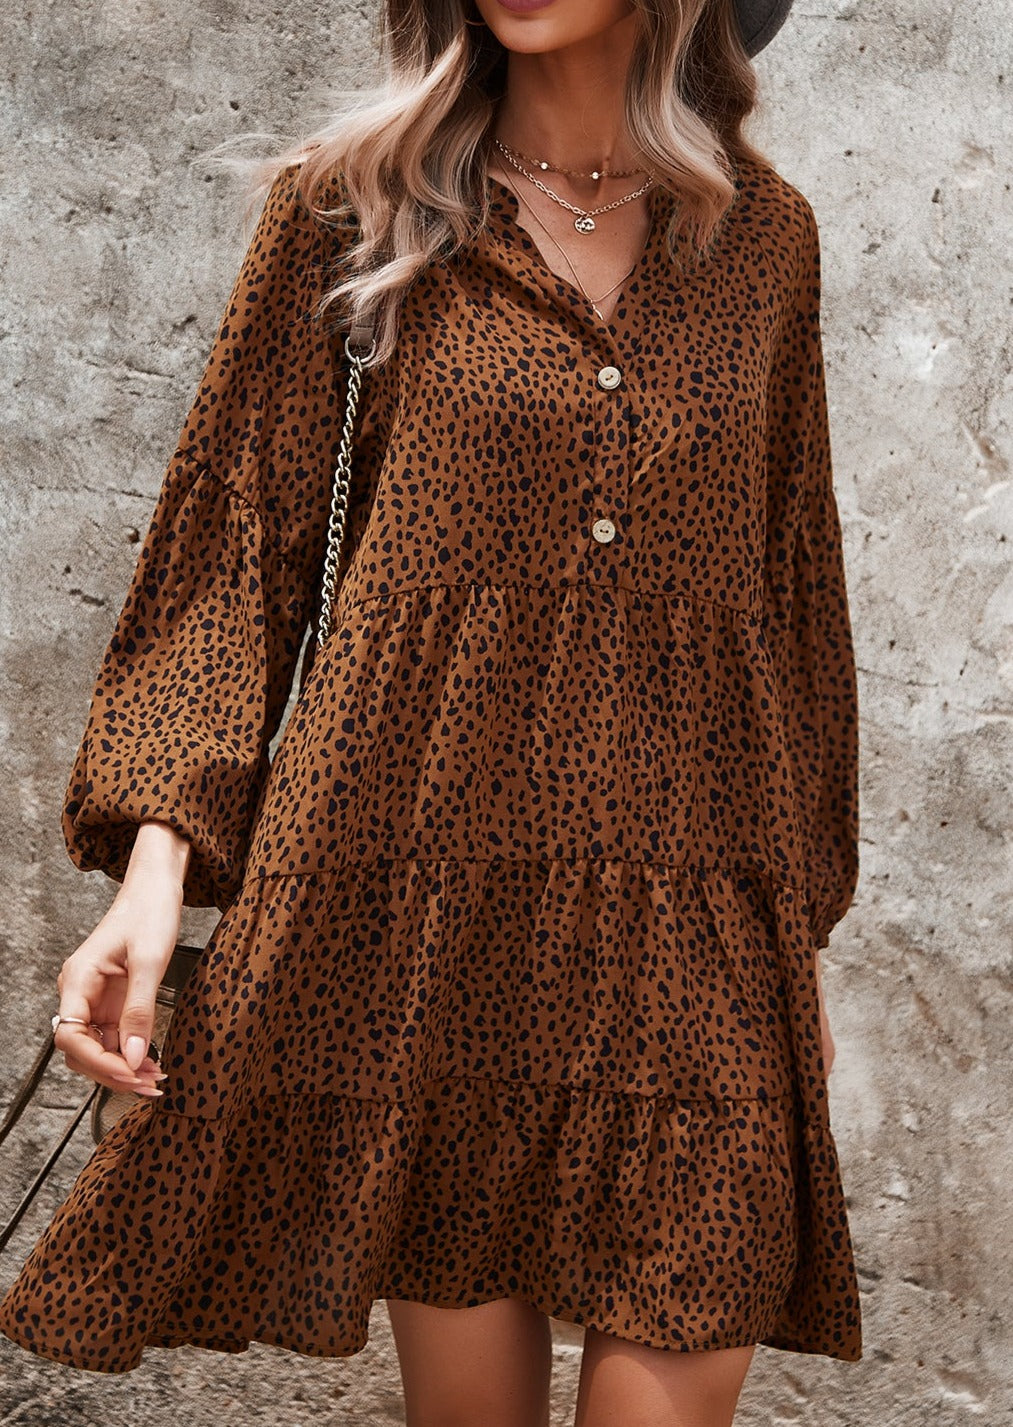 Drop Shoulder Cheetah Print Dress